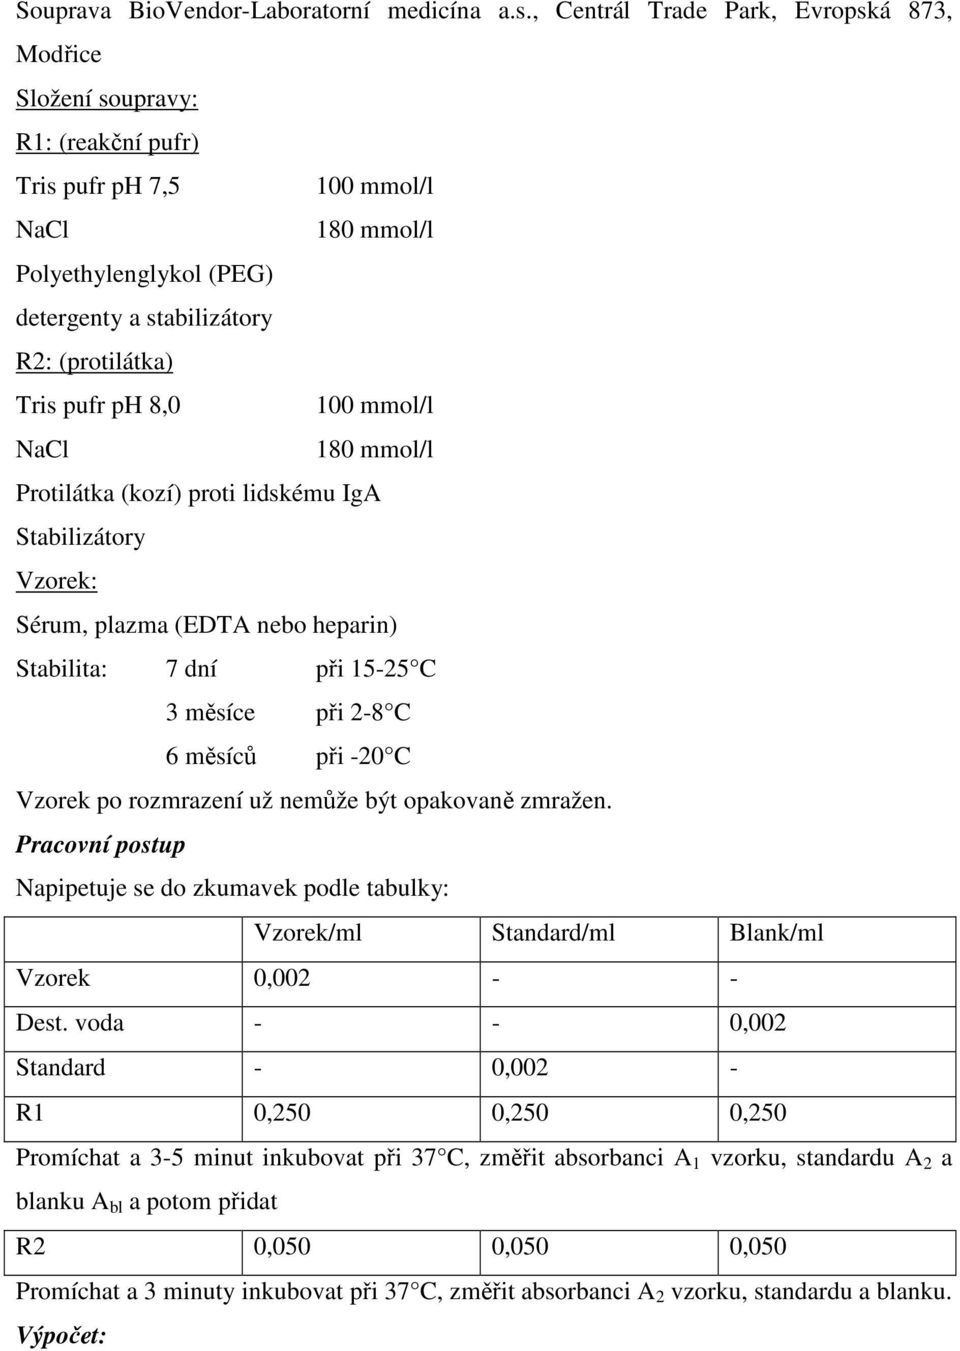 pufr ph 8,0 100 mmol/l NaCl 180 mmol/l Protilátka (kozí) proti lidskému IgA Stabilizátory Vzorek: Sérum, plazma (EDTA nebo heparin) Stabilita: 7 dní při 15-25 C 3 měsíce při 2-8 C 6 měsíců při -20 C